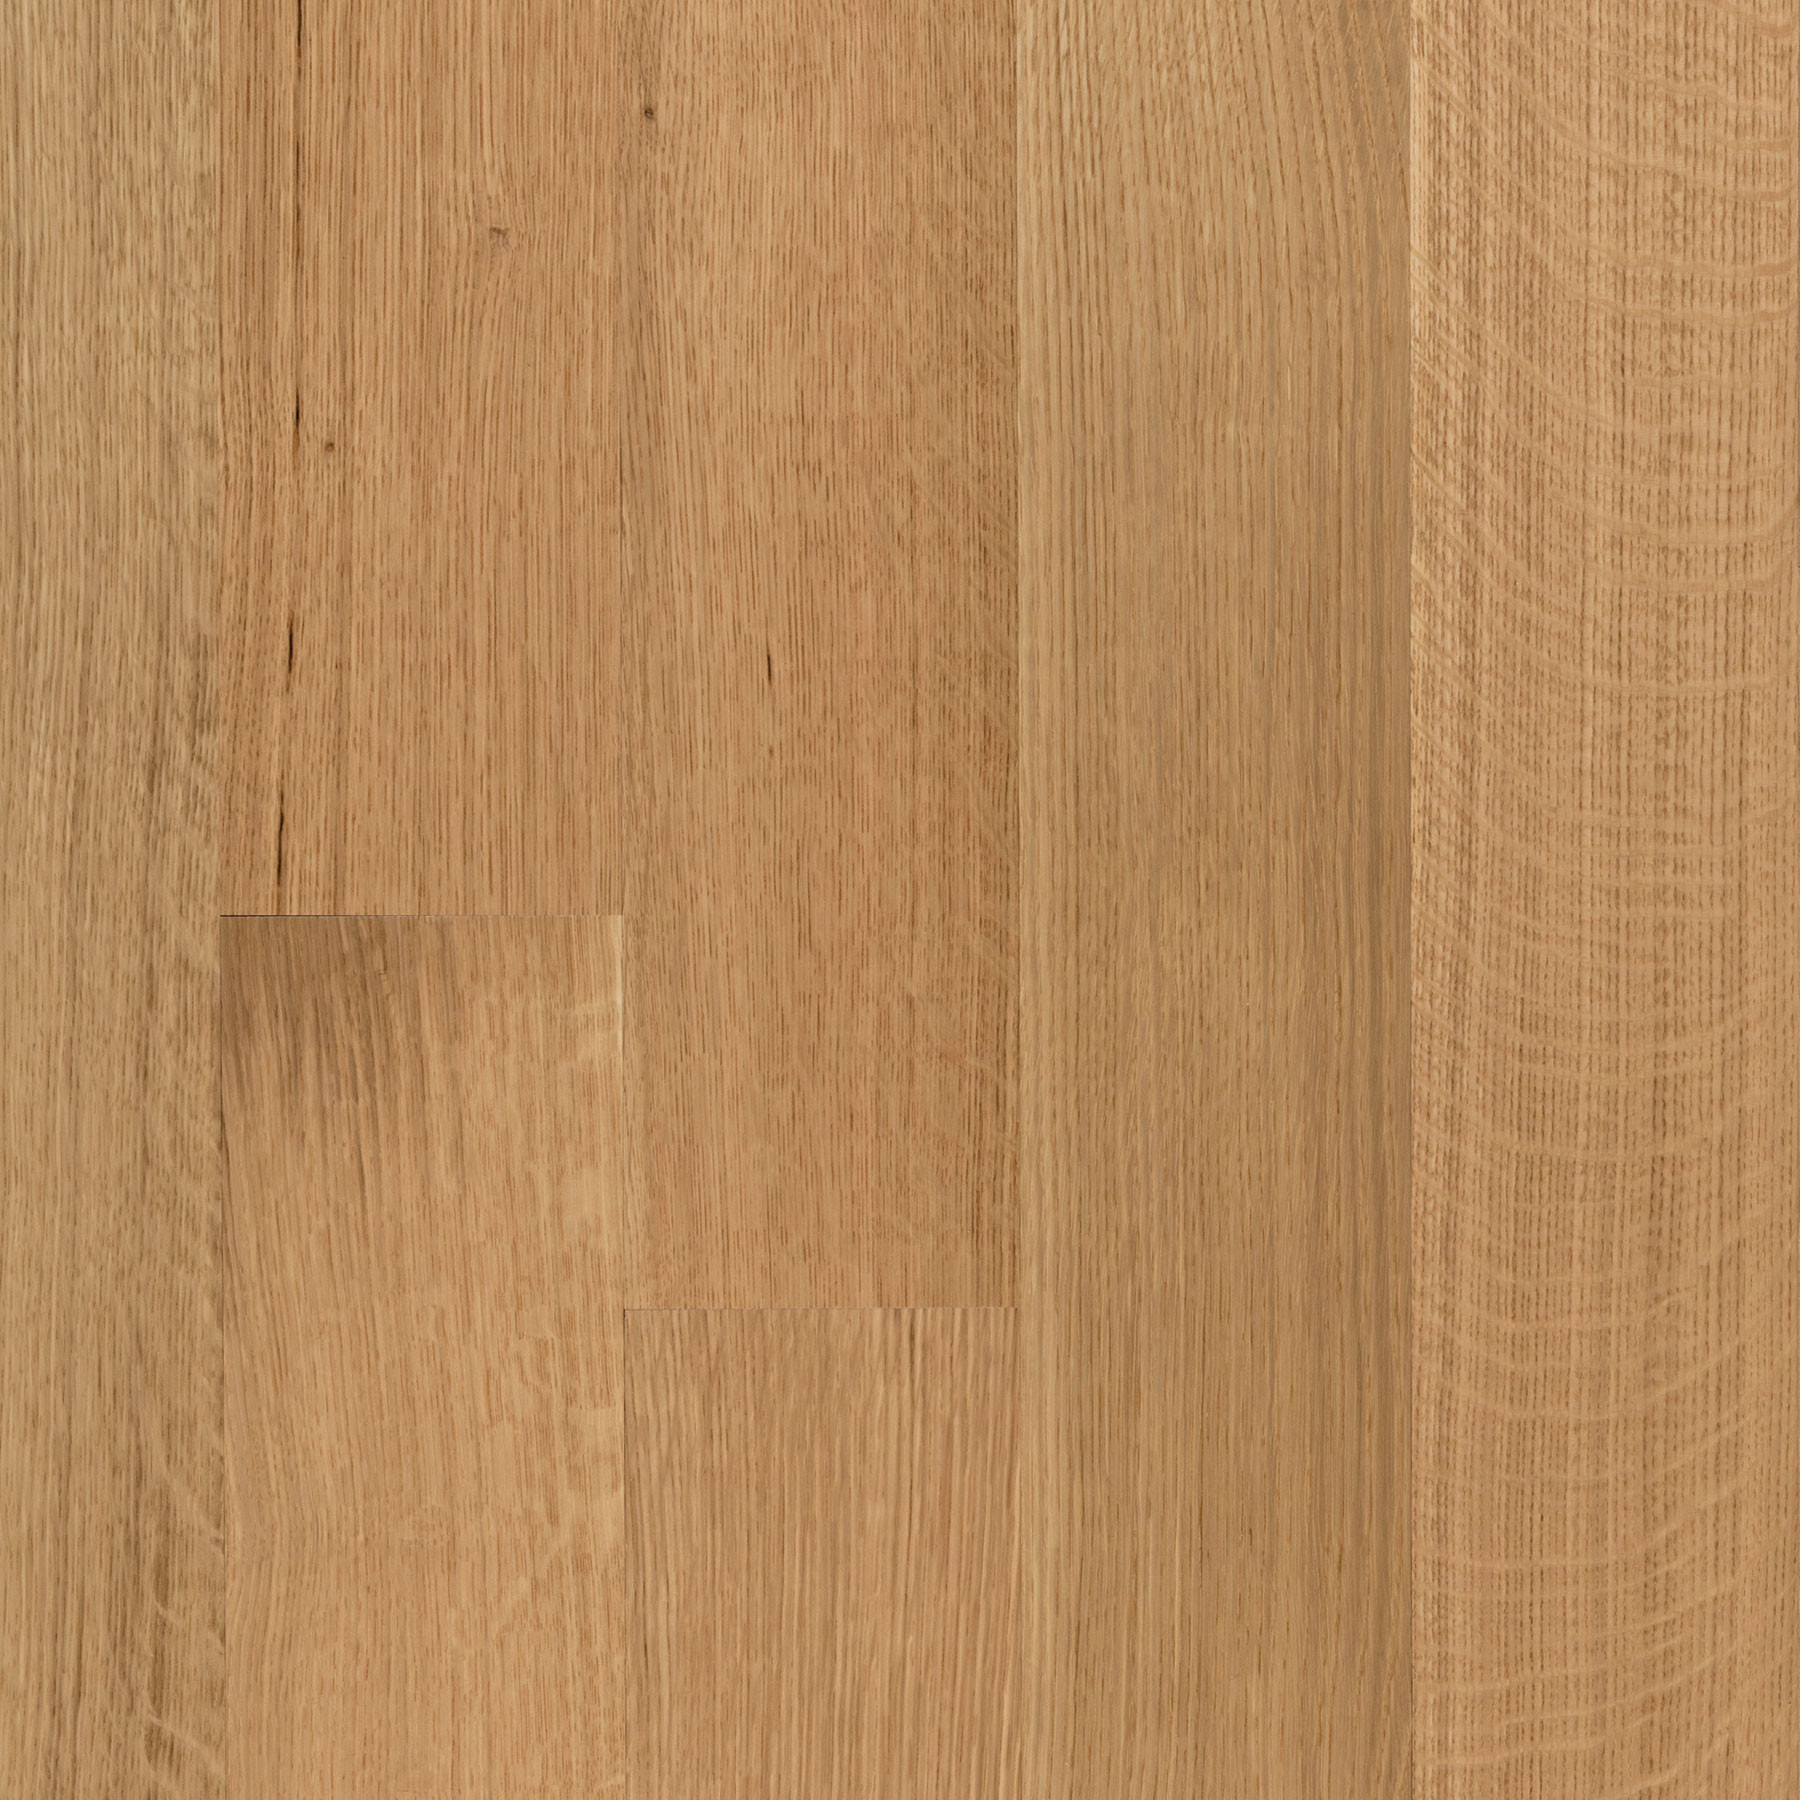 30 Stylish White Oak Grey Hardwood Flooring 2024 free download white oak grey hardwood flooring of american quartered white oak 5e280b3 etx surfaces within american quartered white oak 5e280b3